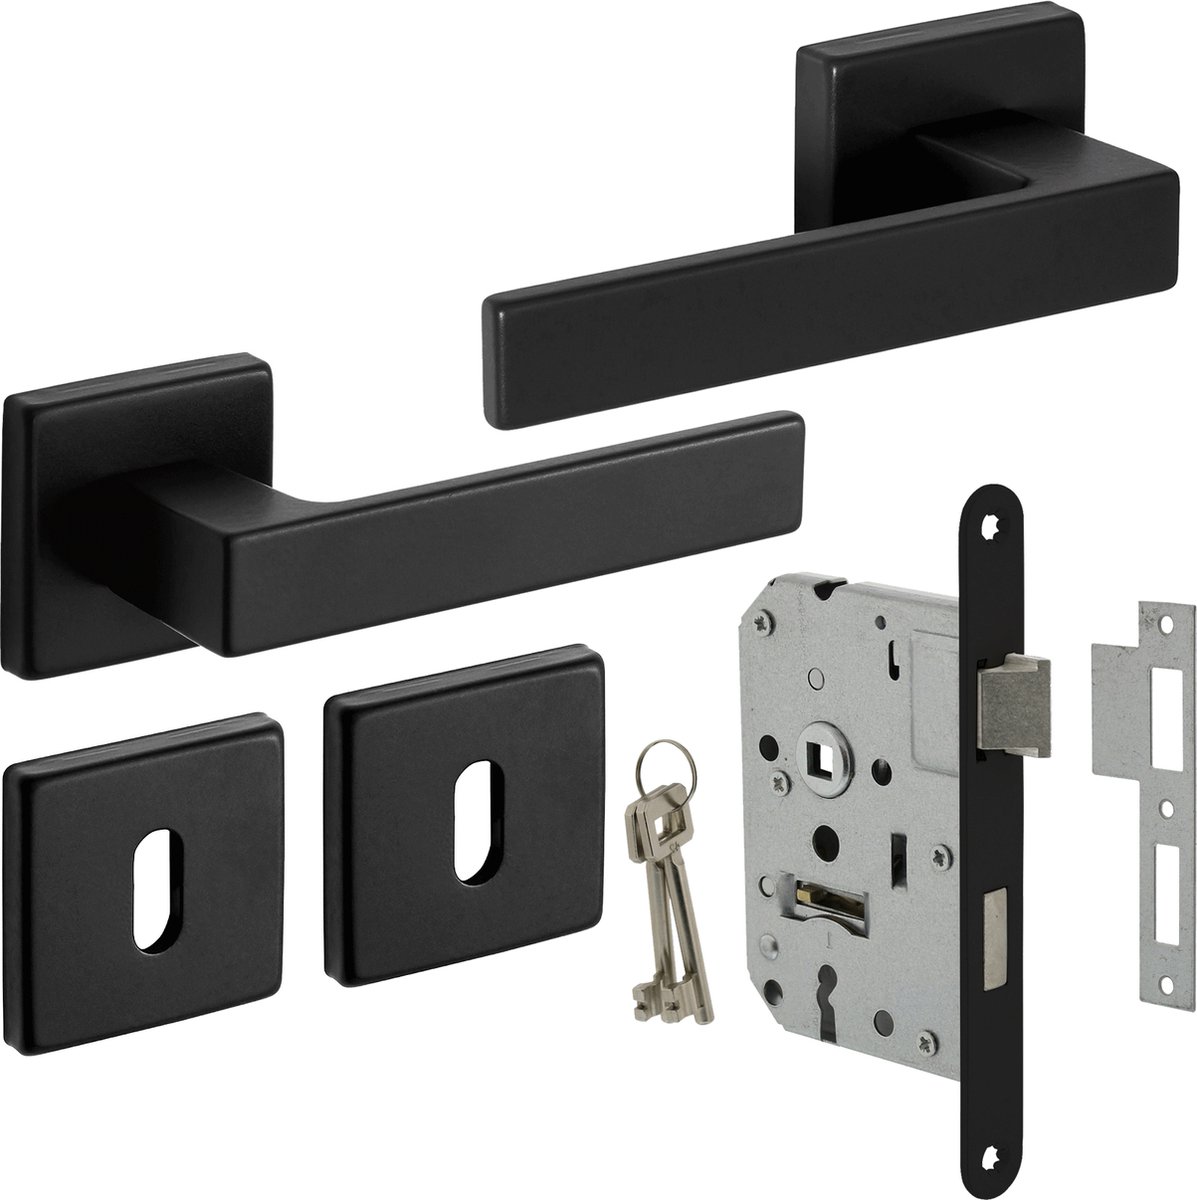 Eliot® Deurbeslag set baardsleutel - deurklink set - baardsleutelrozet set - insteekslot met 2 sleutels - mat zwart - voor binnen deuren